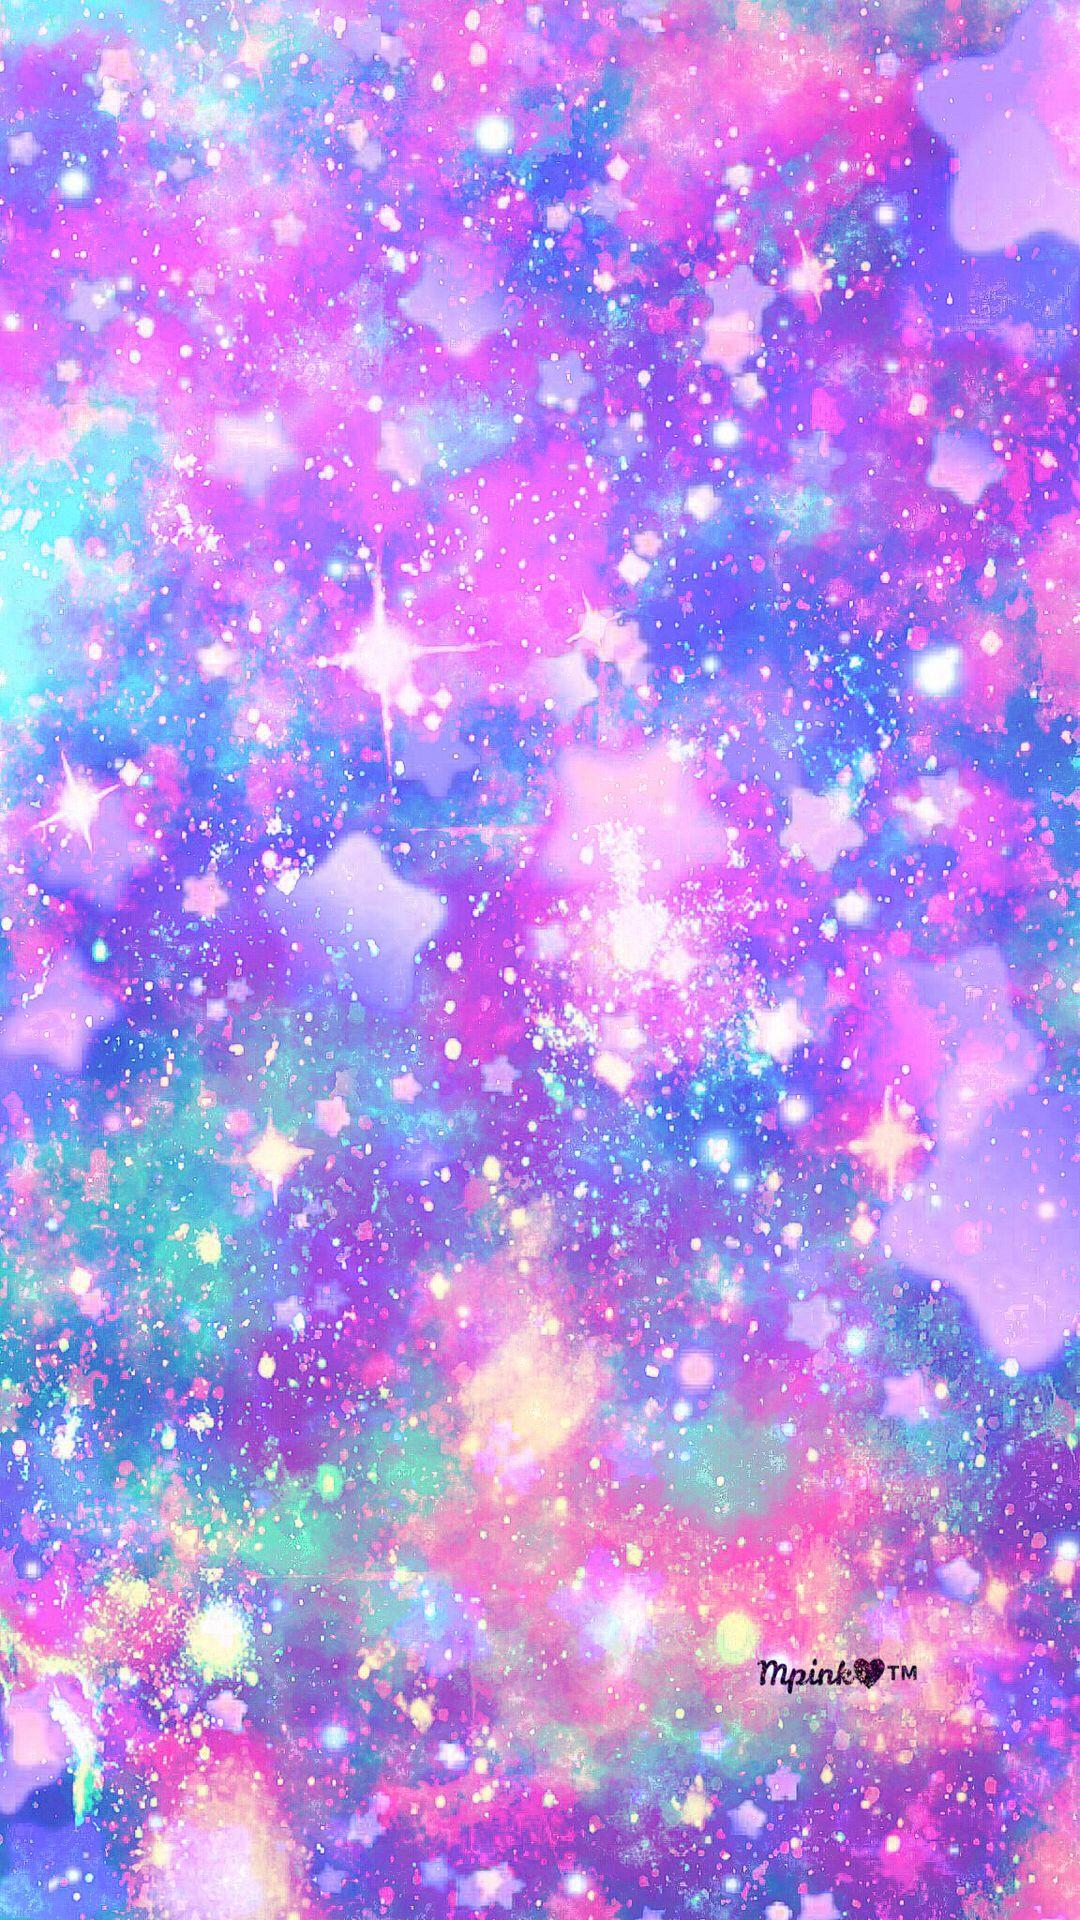 1080 x 1920 · jpeg - Pastel Stars Galaxy Wallpaper #androidwallpaper #iphonewallpaper # ...